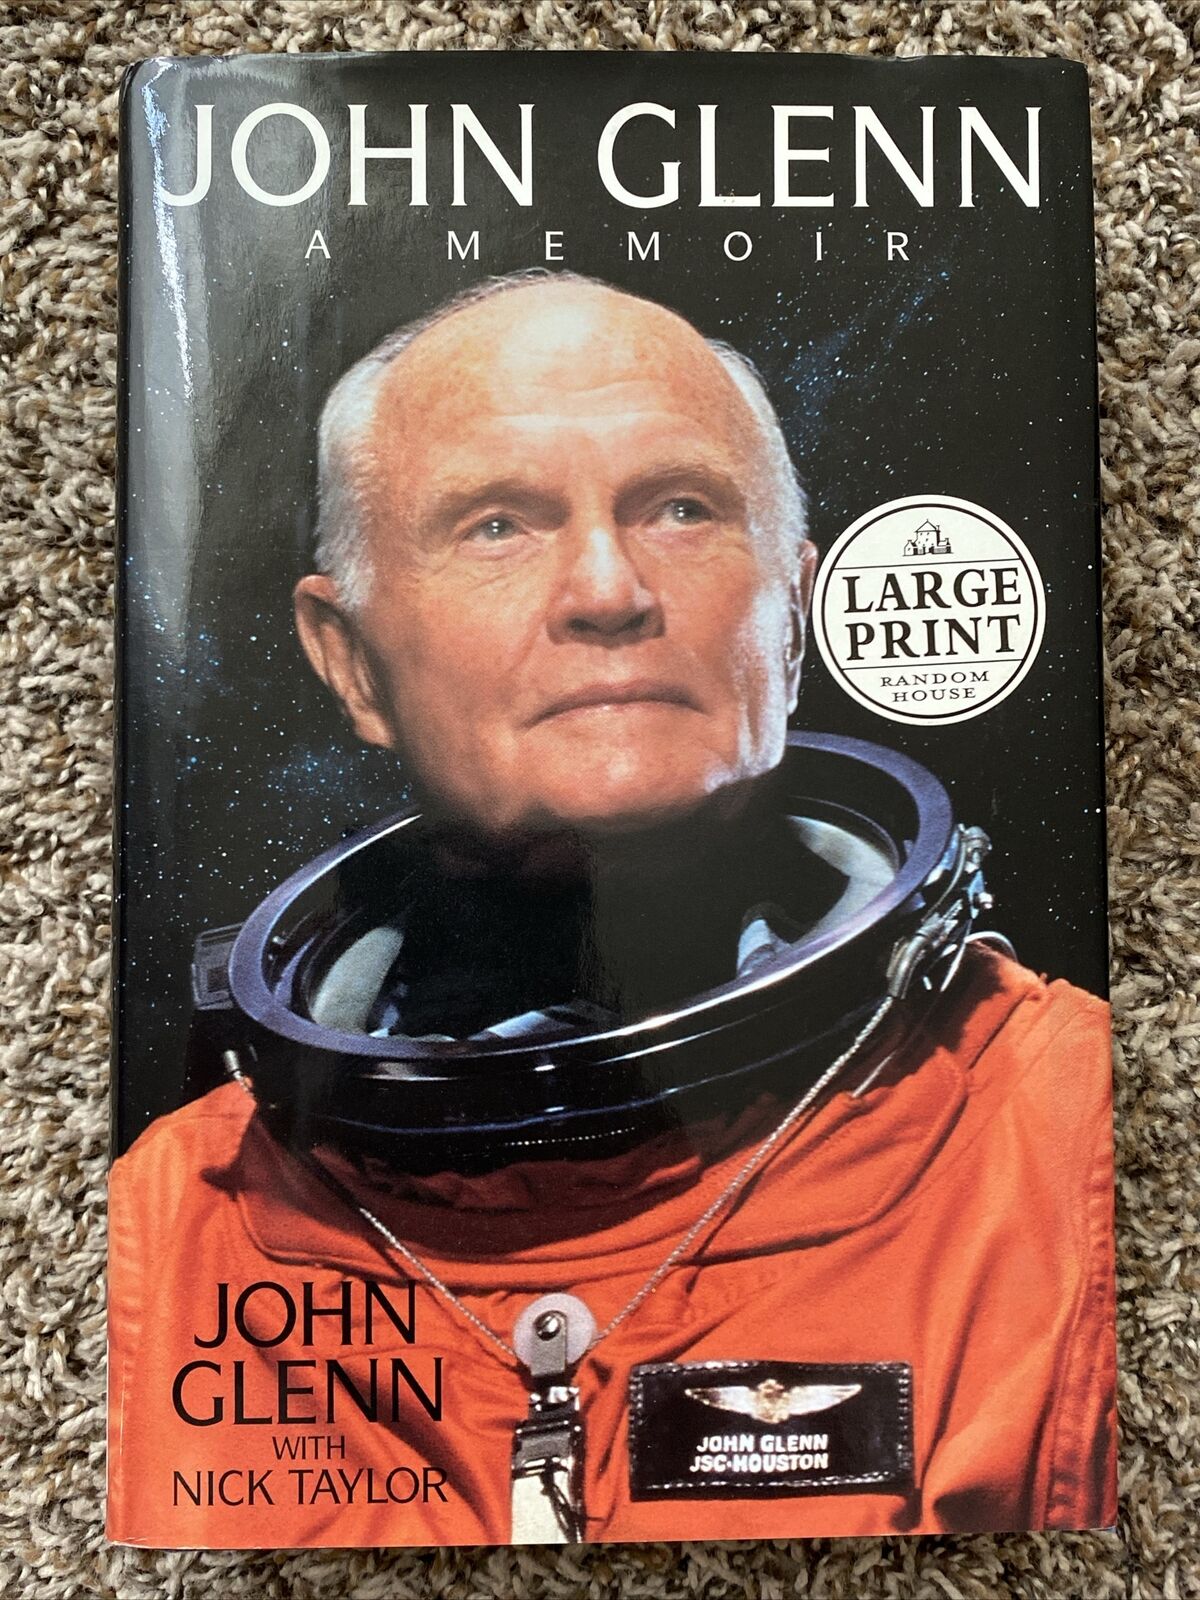 John Glenn *SIGNED* John Glenn Memoir - NASA Legend - Mercury 7 - Large Print